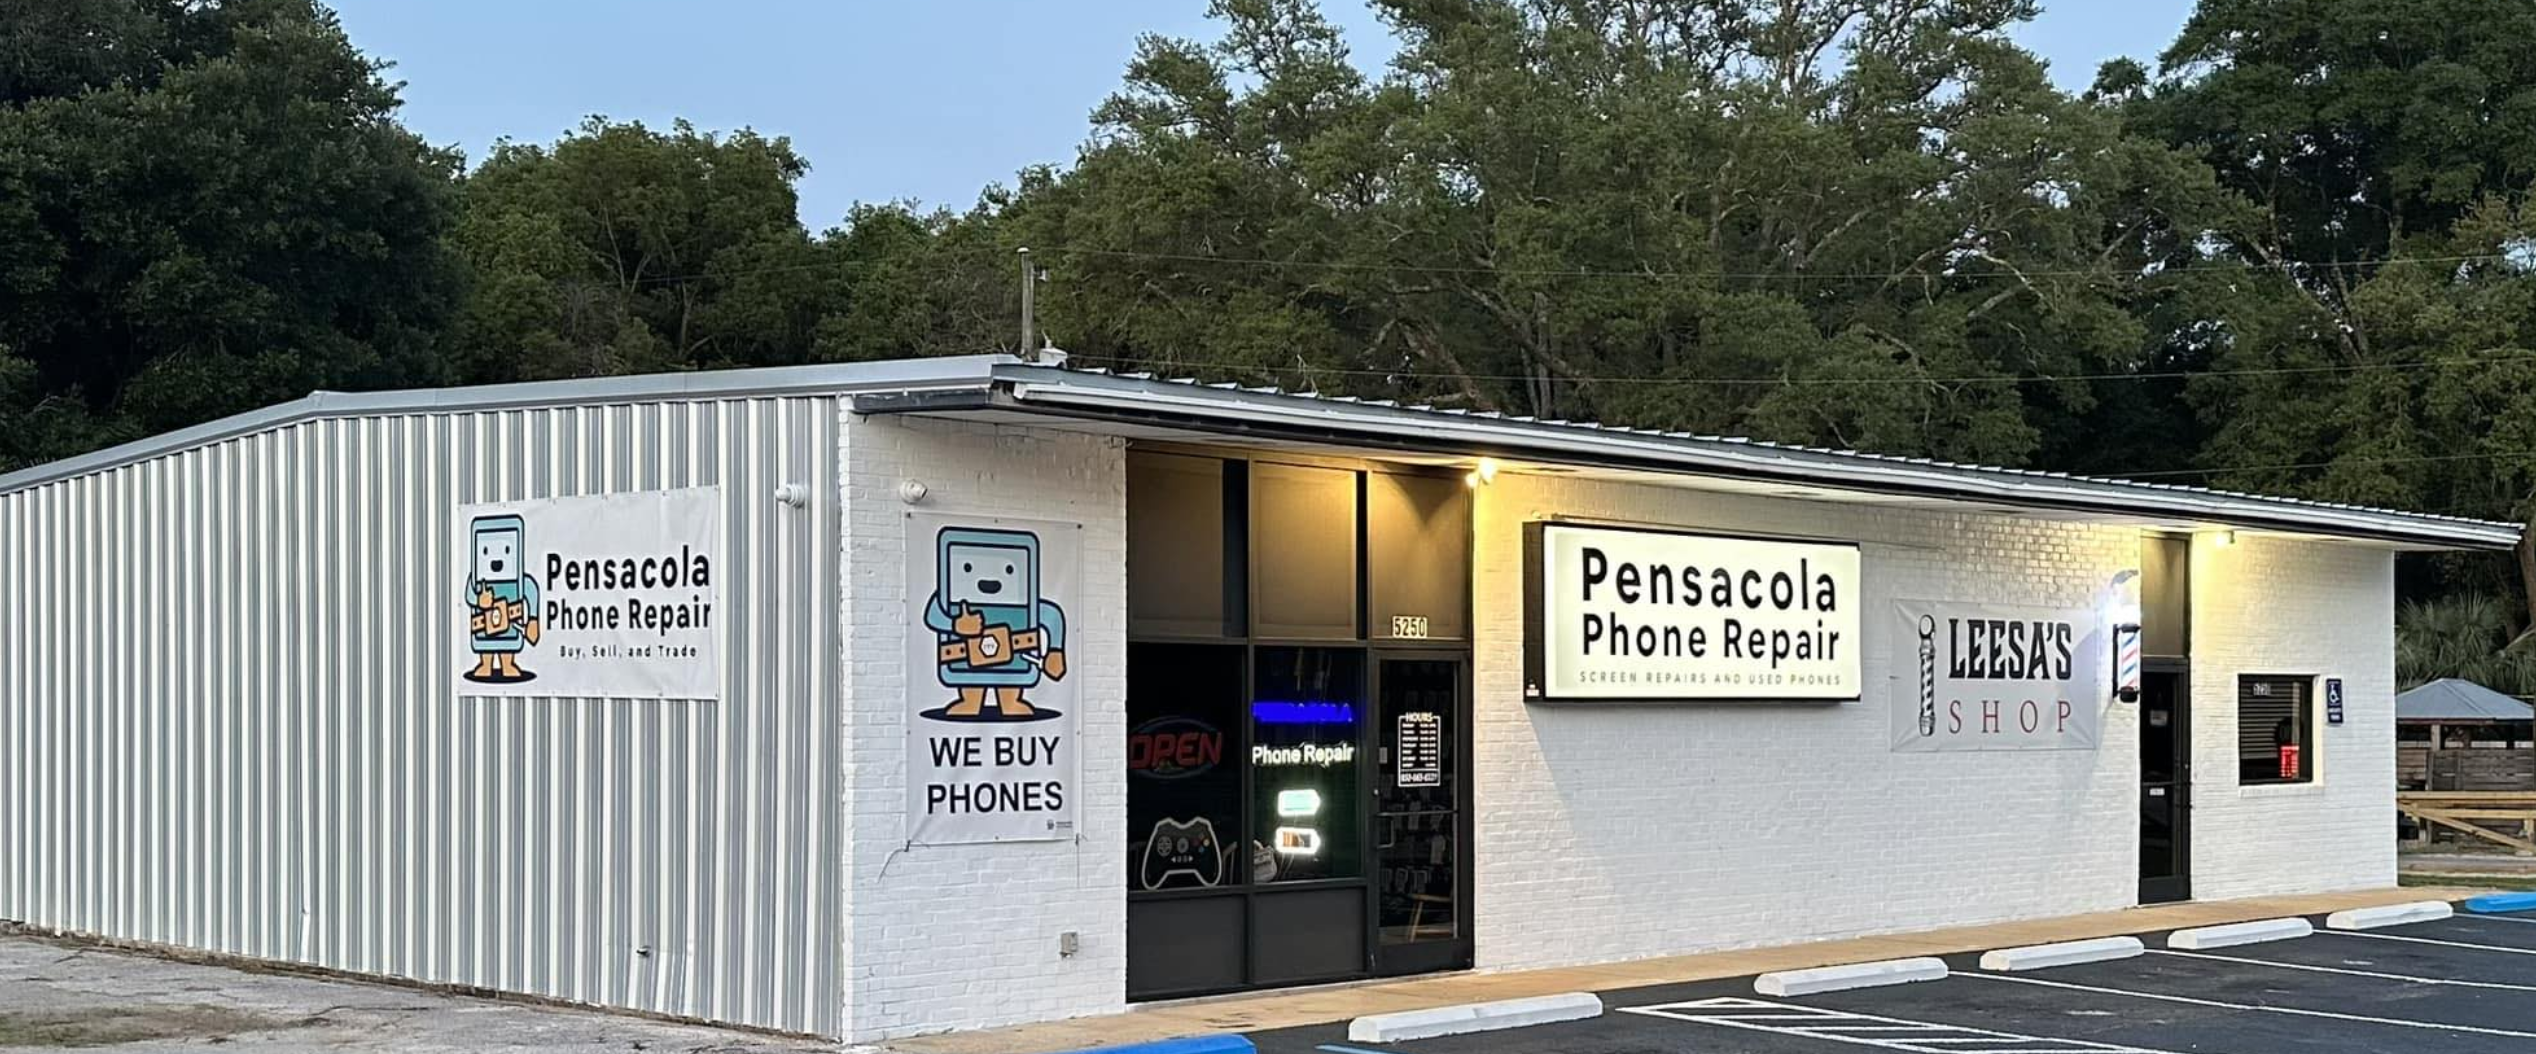 About Pensacola Phone Repair